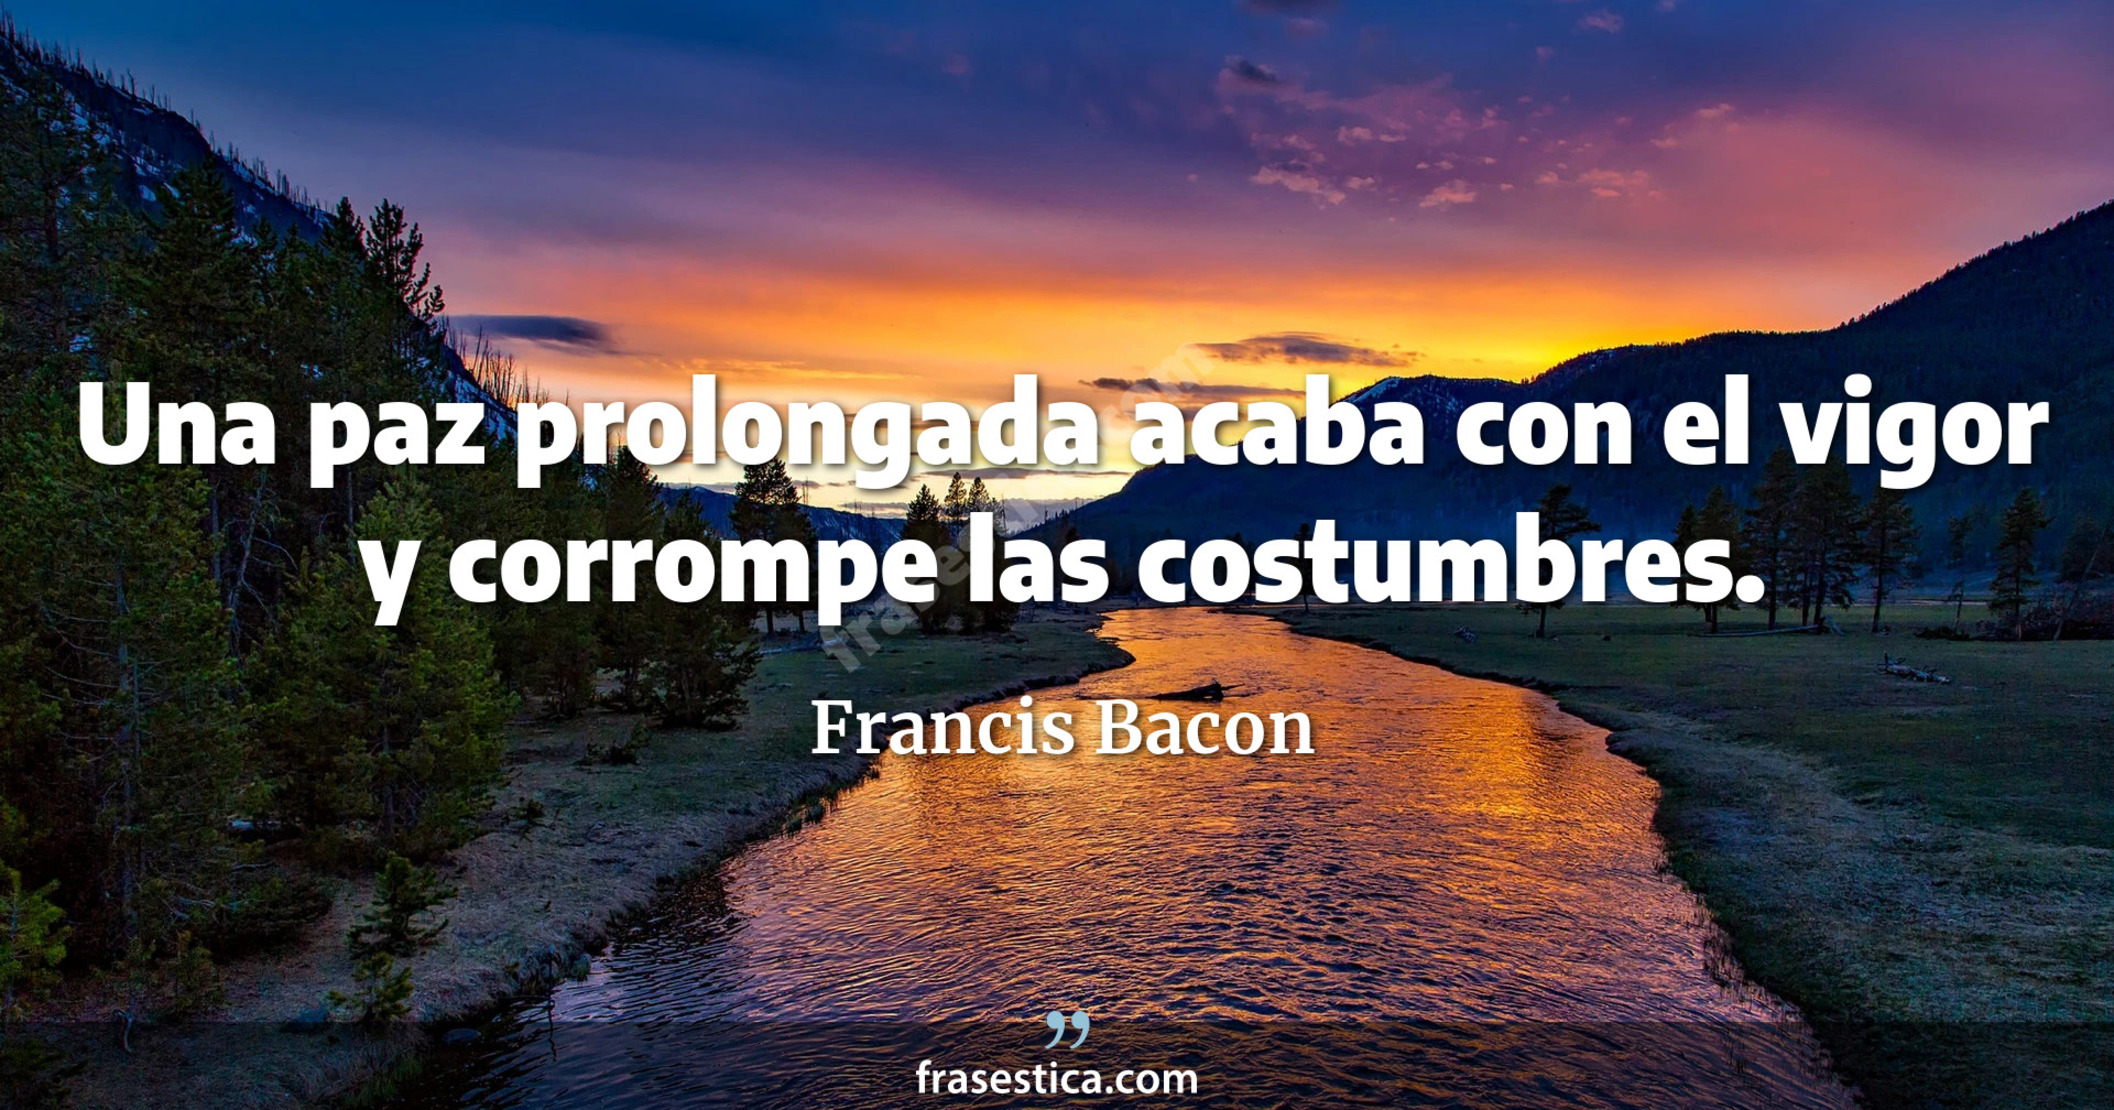 Una paz prolongada acaba con el vigor y corrompe las costumbres. - Francis Bacon